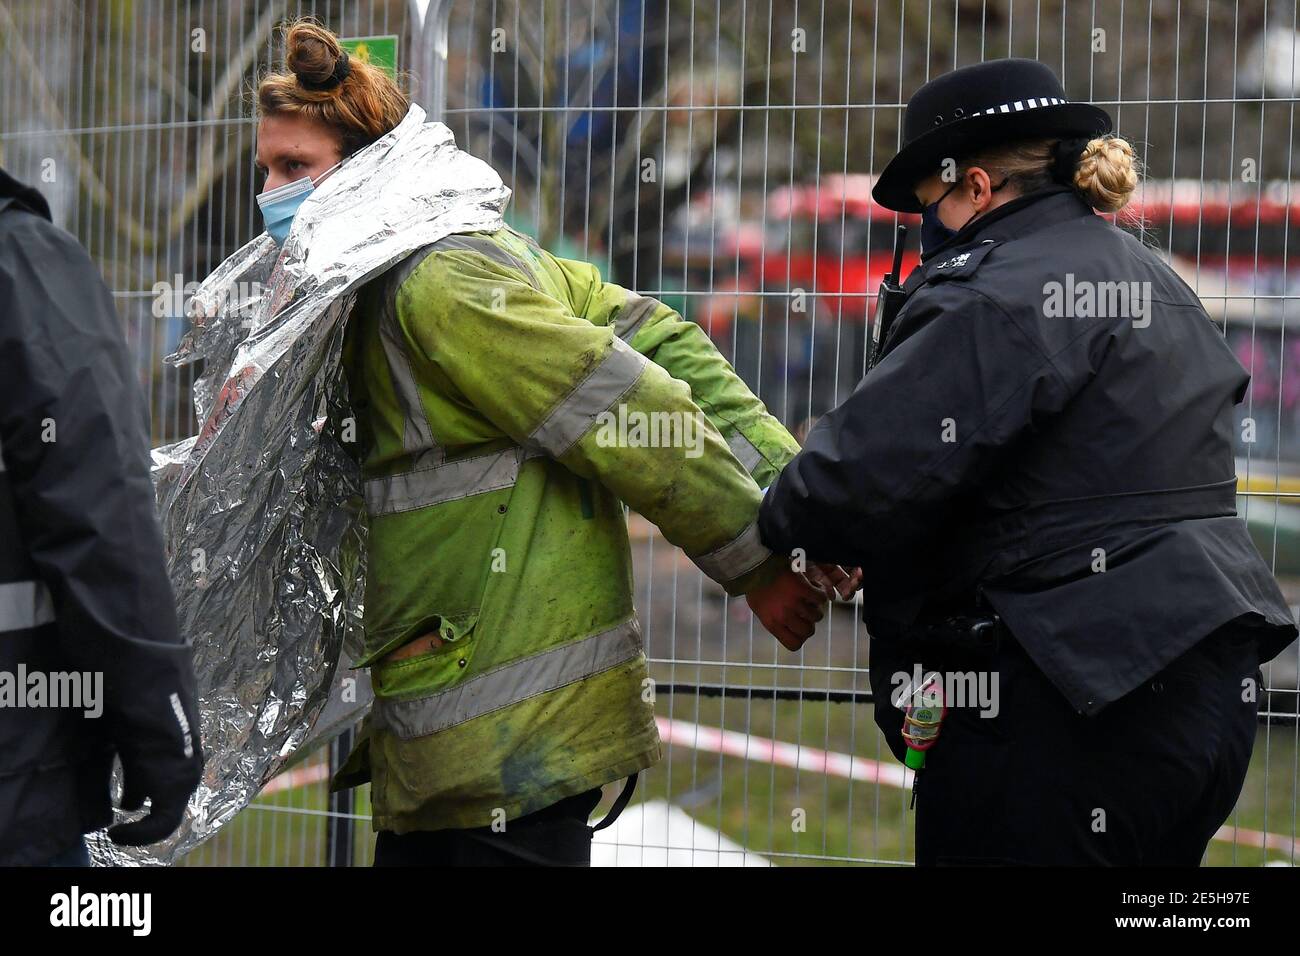 Un oficial de policía enana a un manifestante en un campamento improvisado, ya que los activistas de la rebelión de extinción ocupan túneles bajo Euston Square Gardens para protestar contra el ferrocarril de alta velocidad HS2, en Londres, Gran Bretaña, el 28 de enero de 2021. REUTERS/Toby Melville Foto de stock